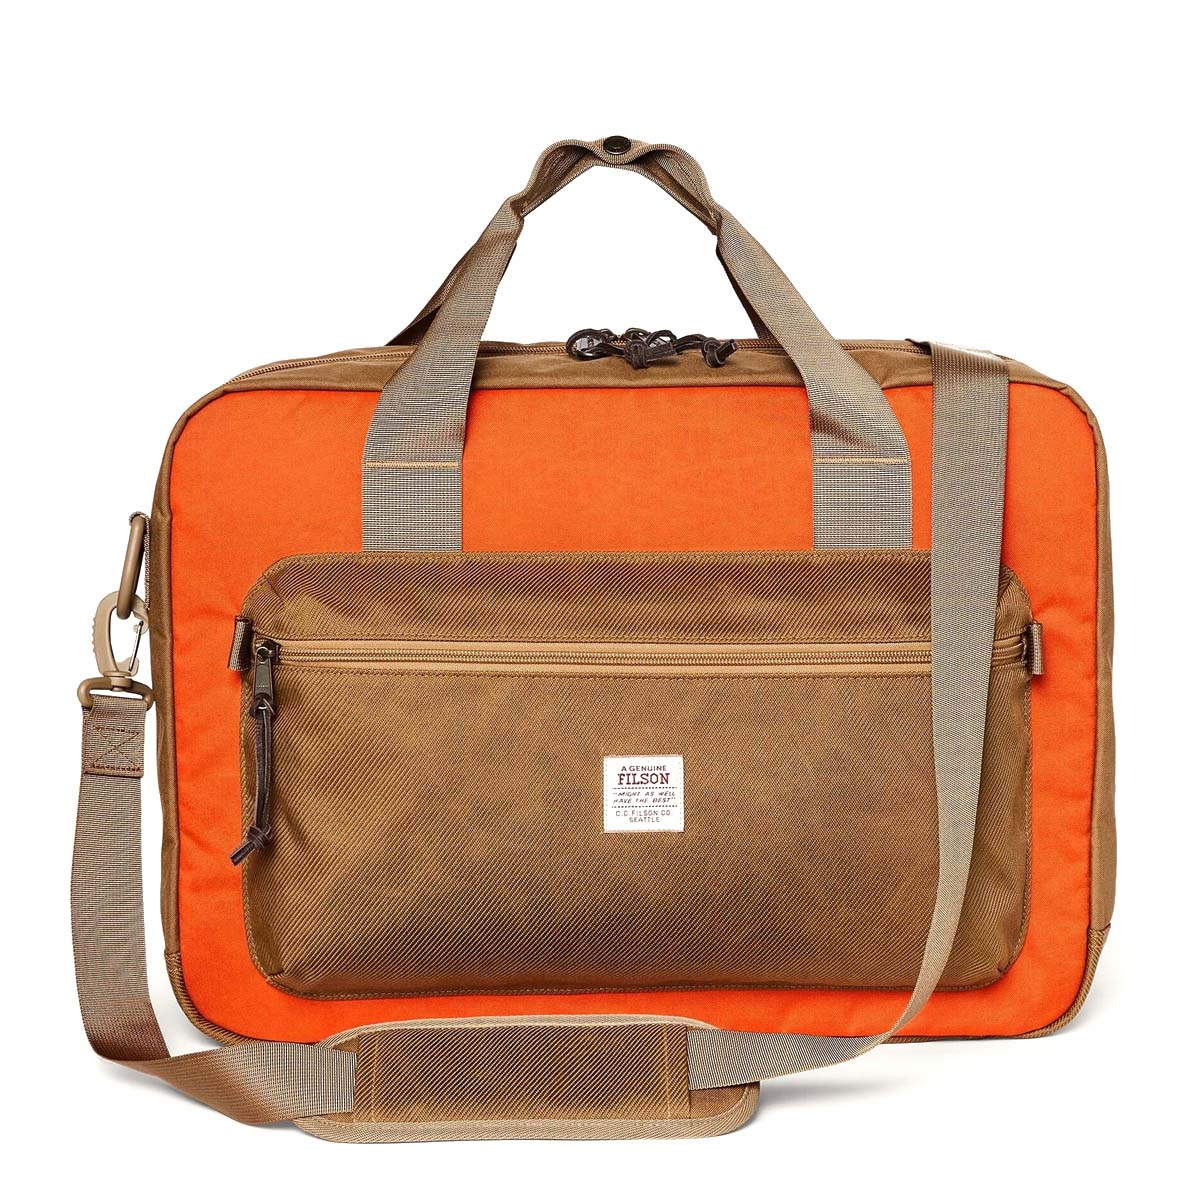 Filson Surveyor Pullman Pack Dark Tan/Flame, robuste und vielseitige Reisetasche für ein langes Wochenende oder mehr